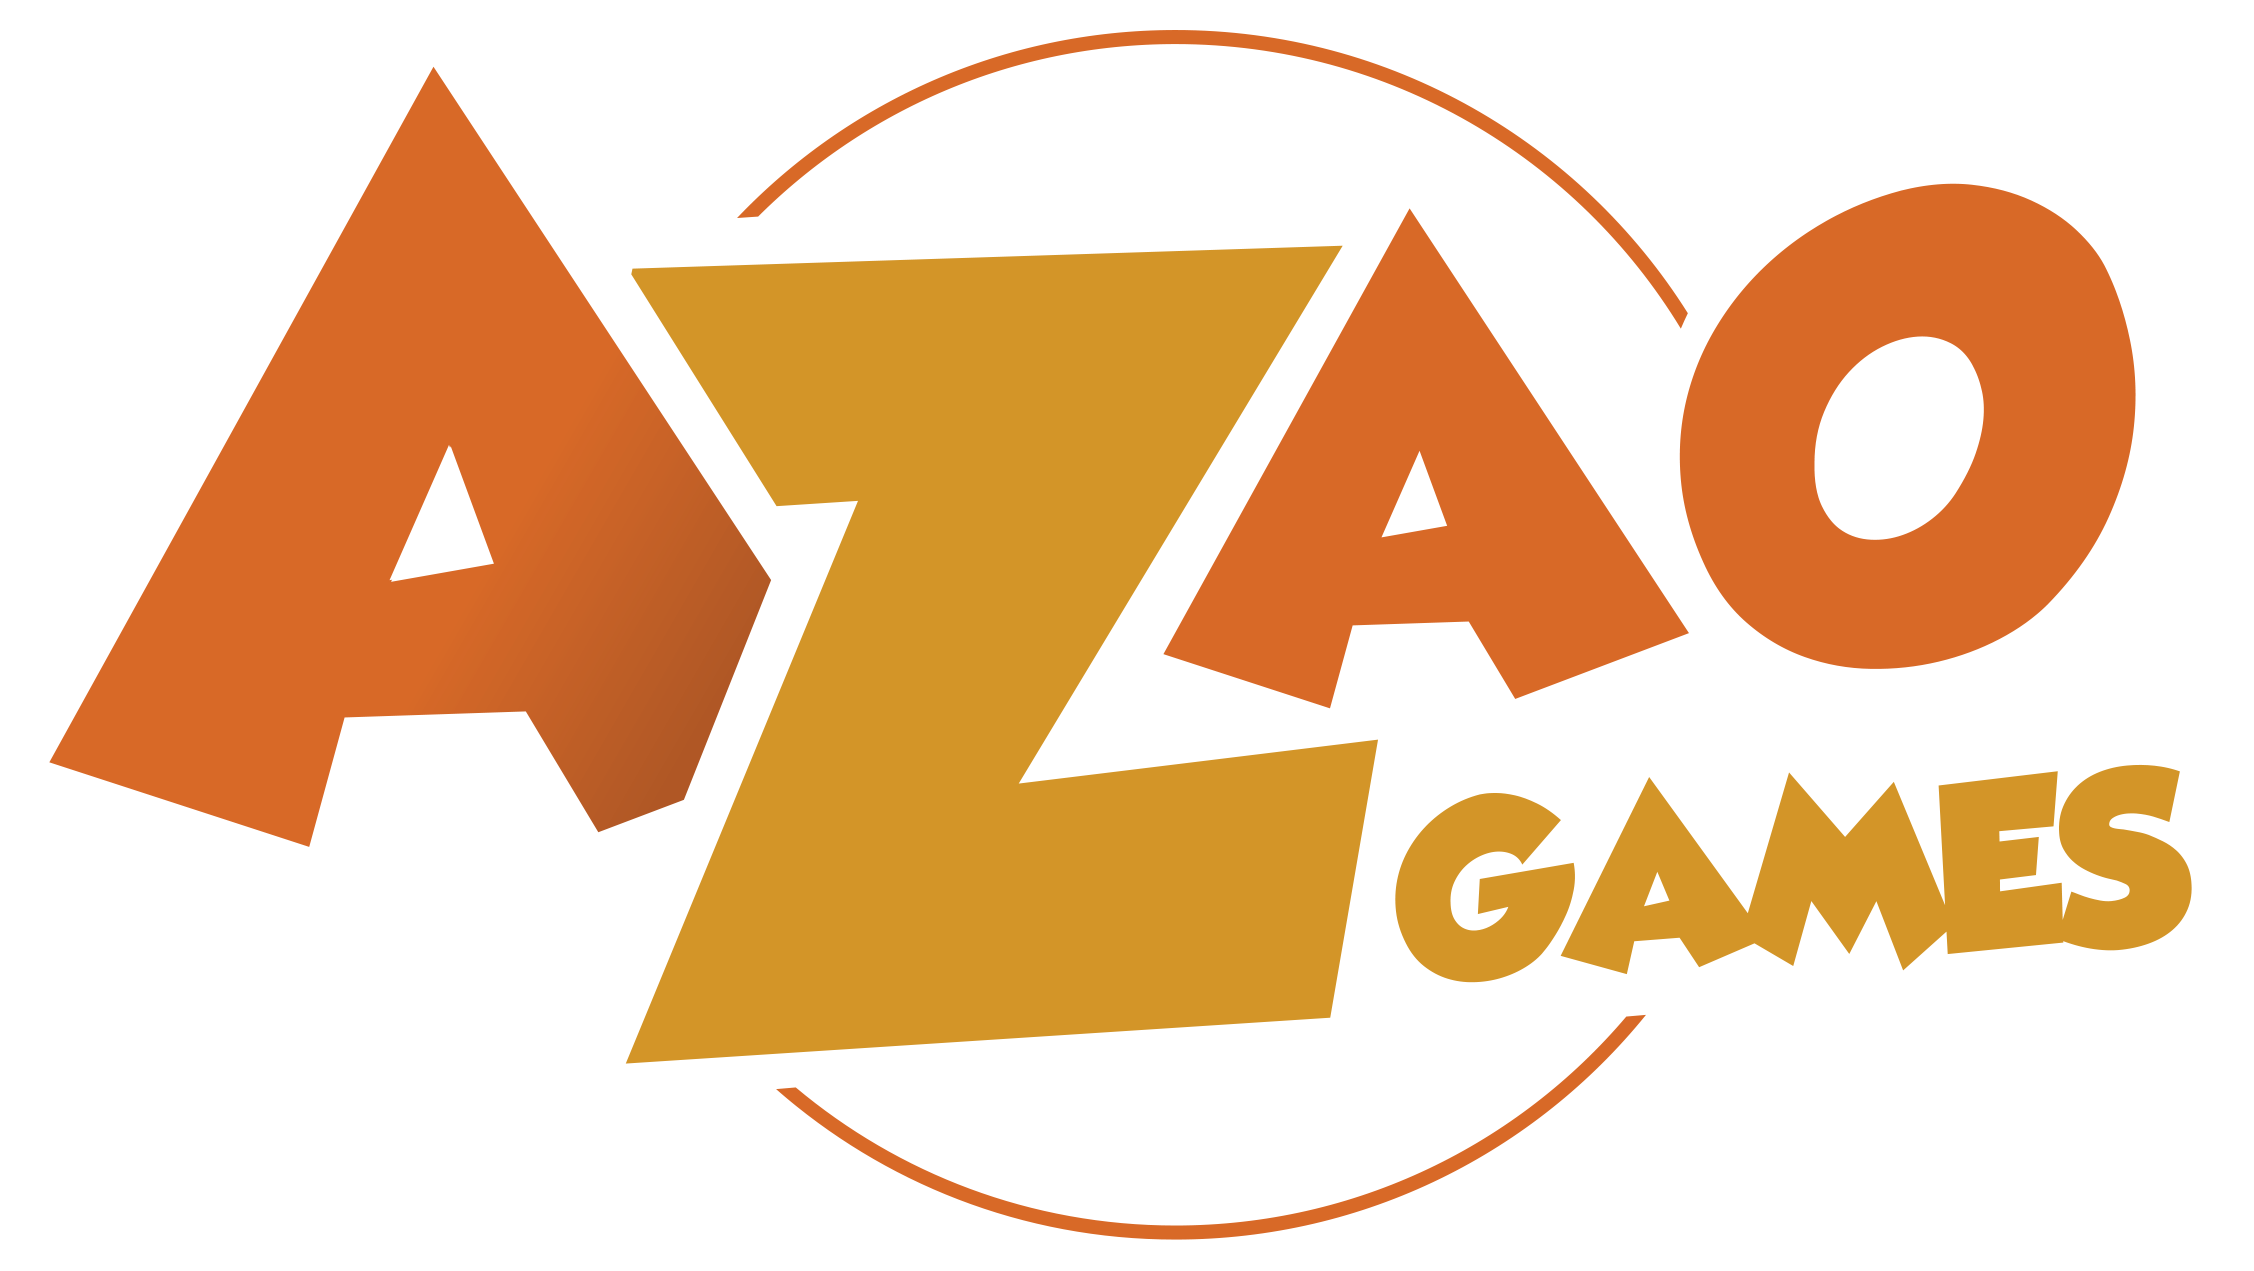 Logo Azao Games rond